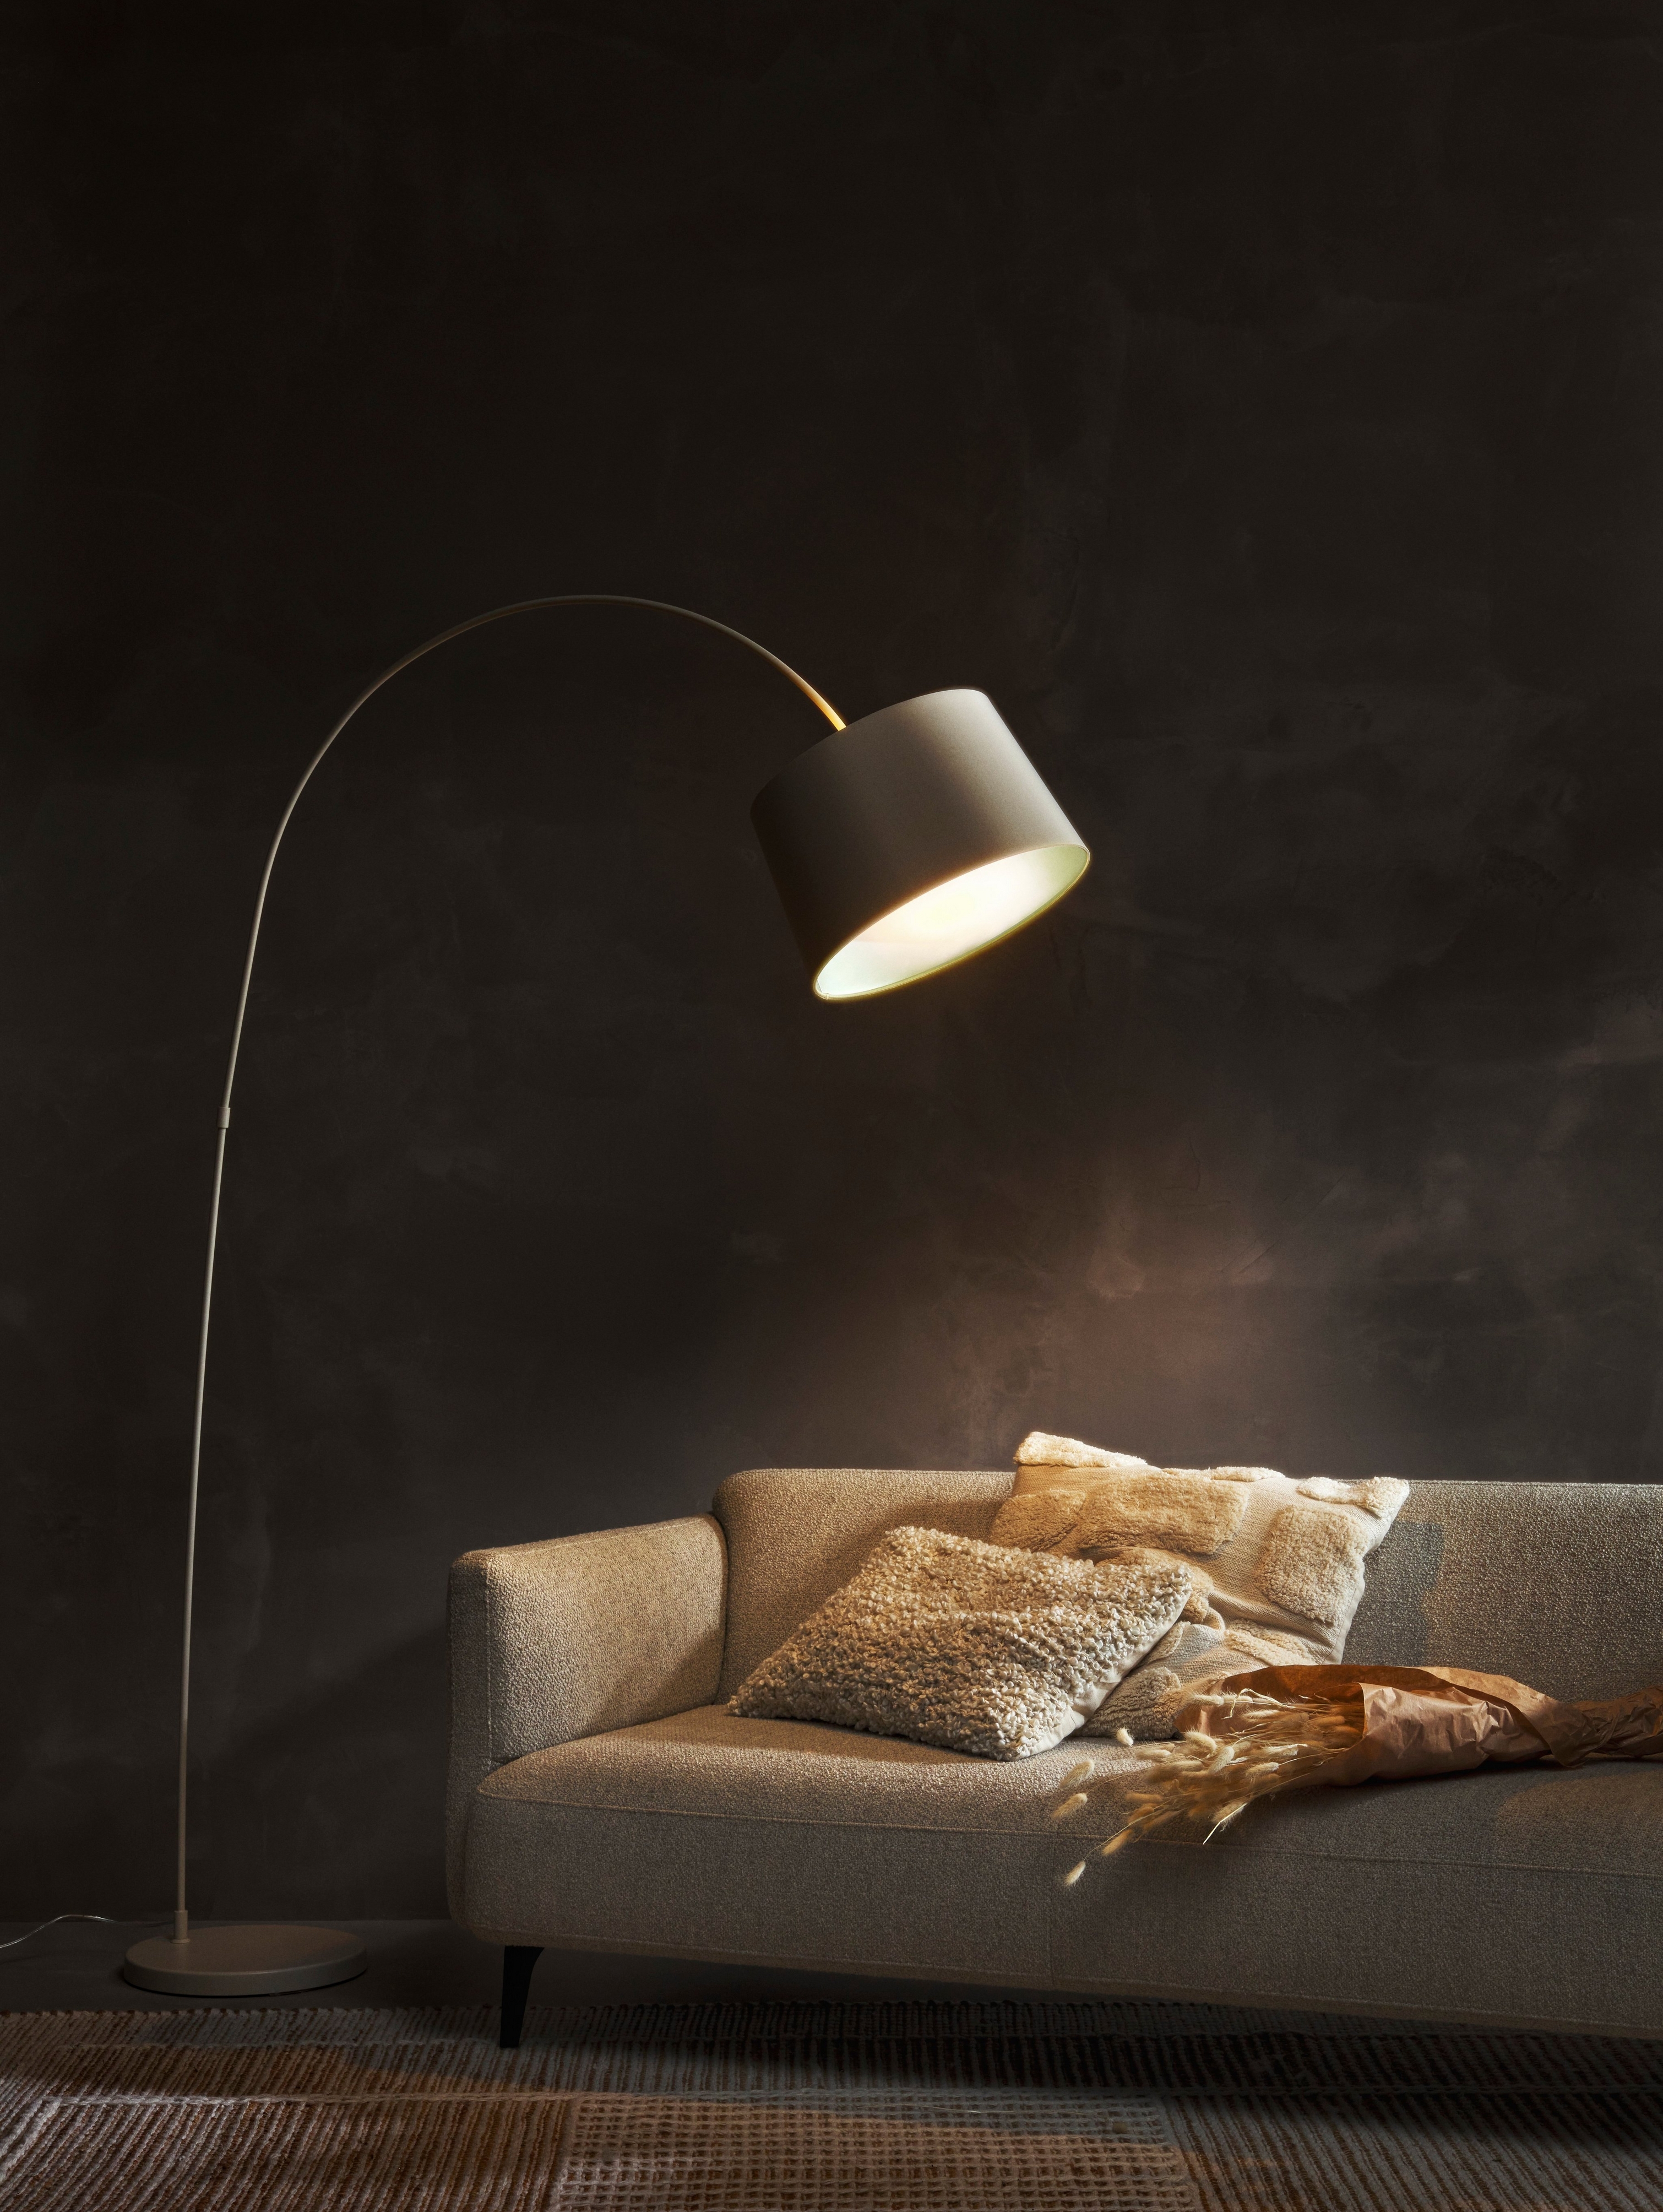 Lampa podłogowa Kuta oświetlająca szarą sofę Modena z poduszkami na tle ciemnej ściany.